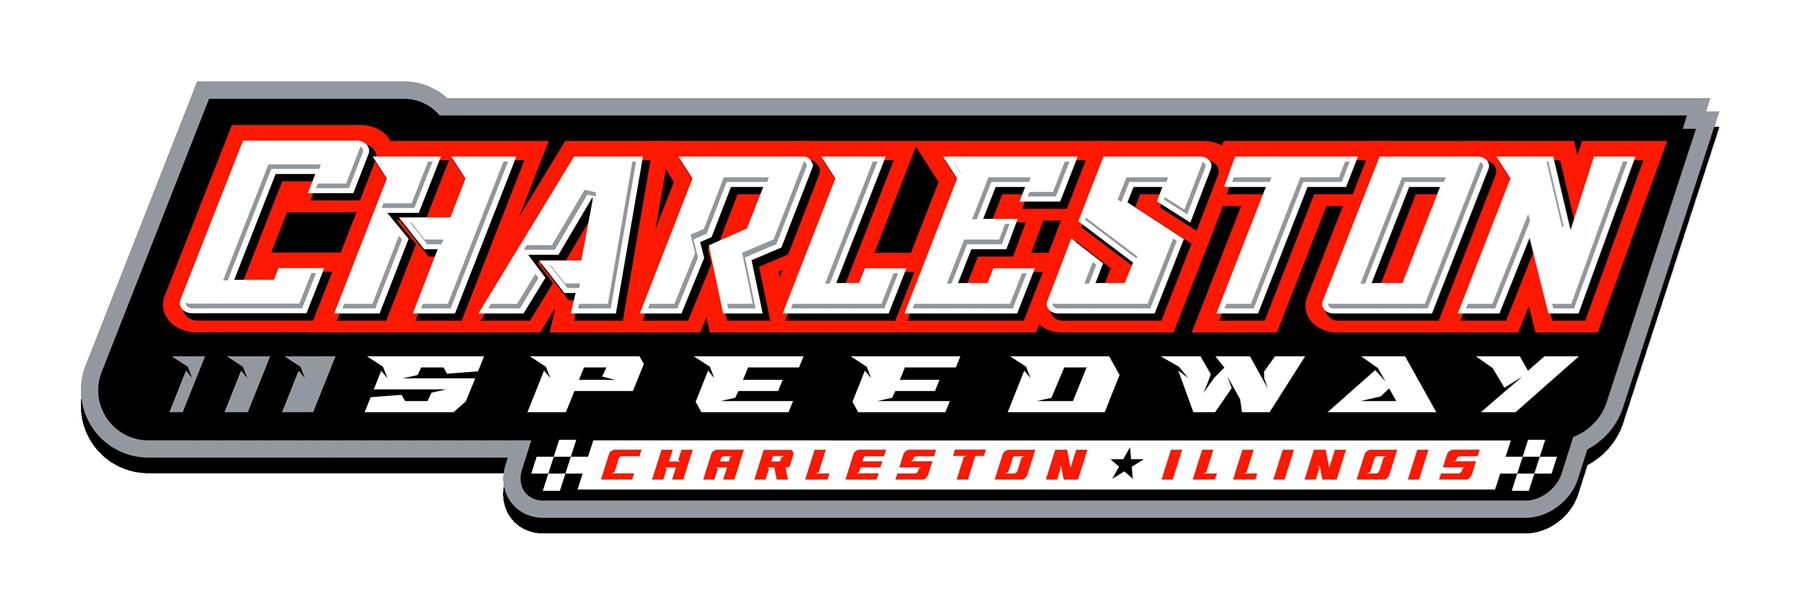 6/26/2020 - Charleston Speedway